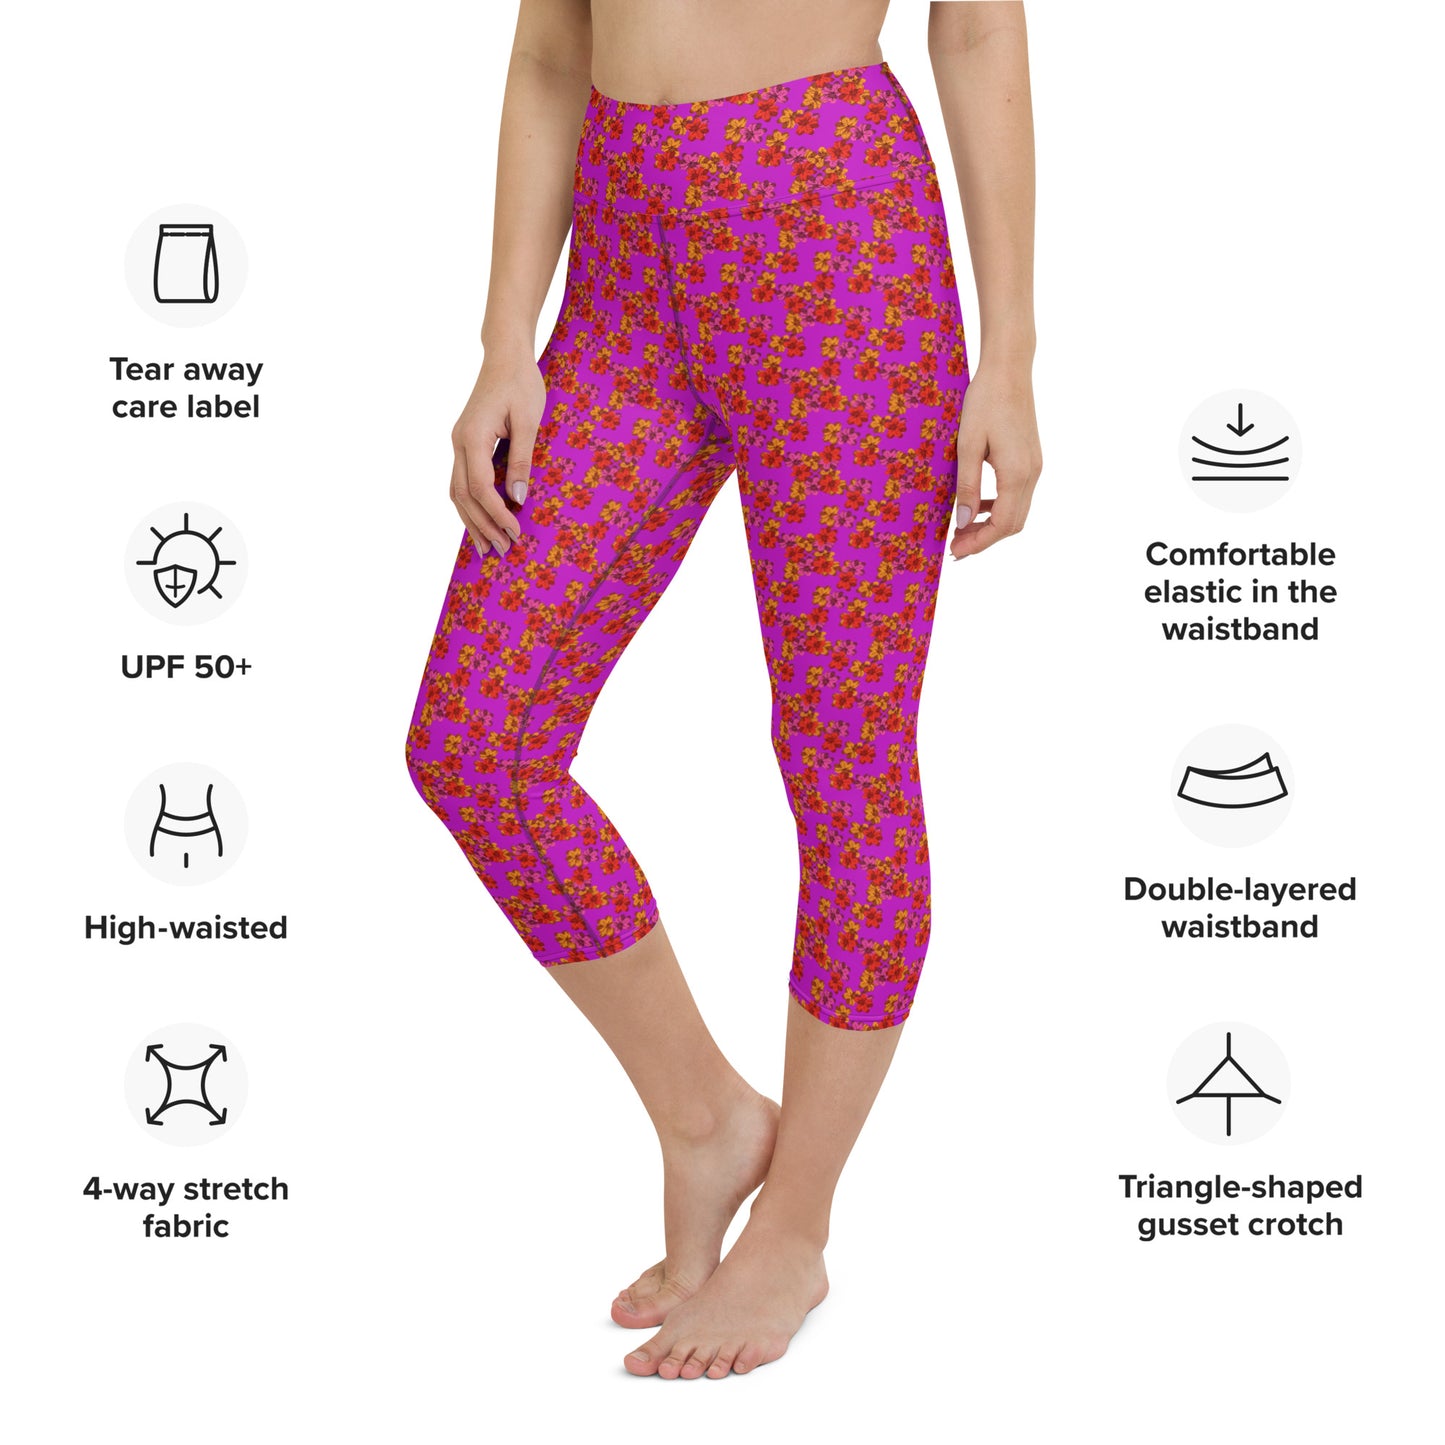 Alpenrose Capri High Waist Yoga Leggings / Pants with Inside Pocket